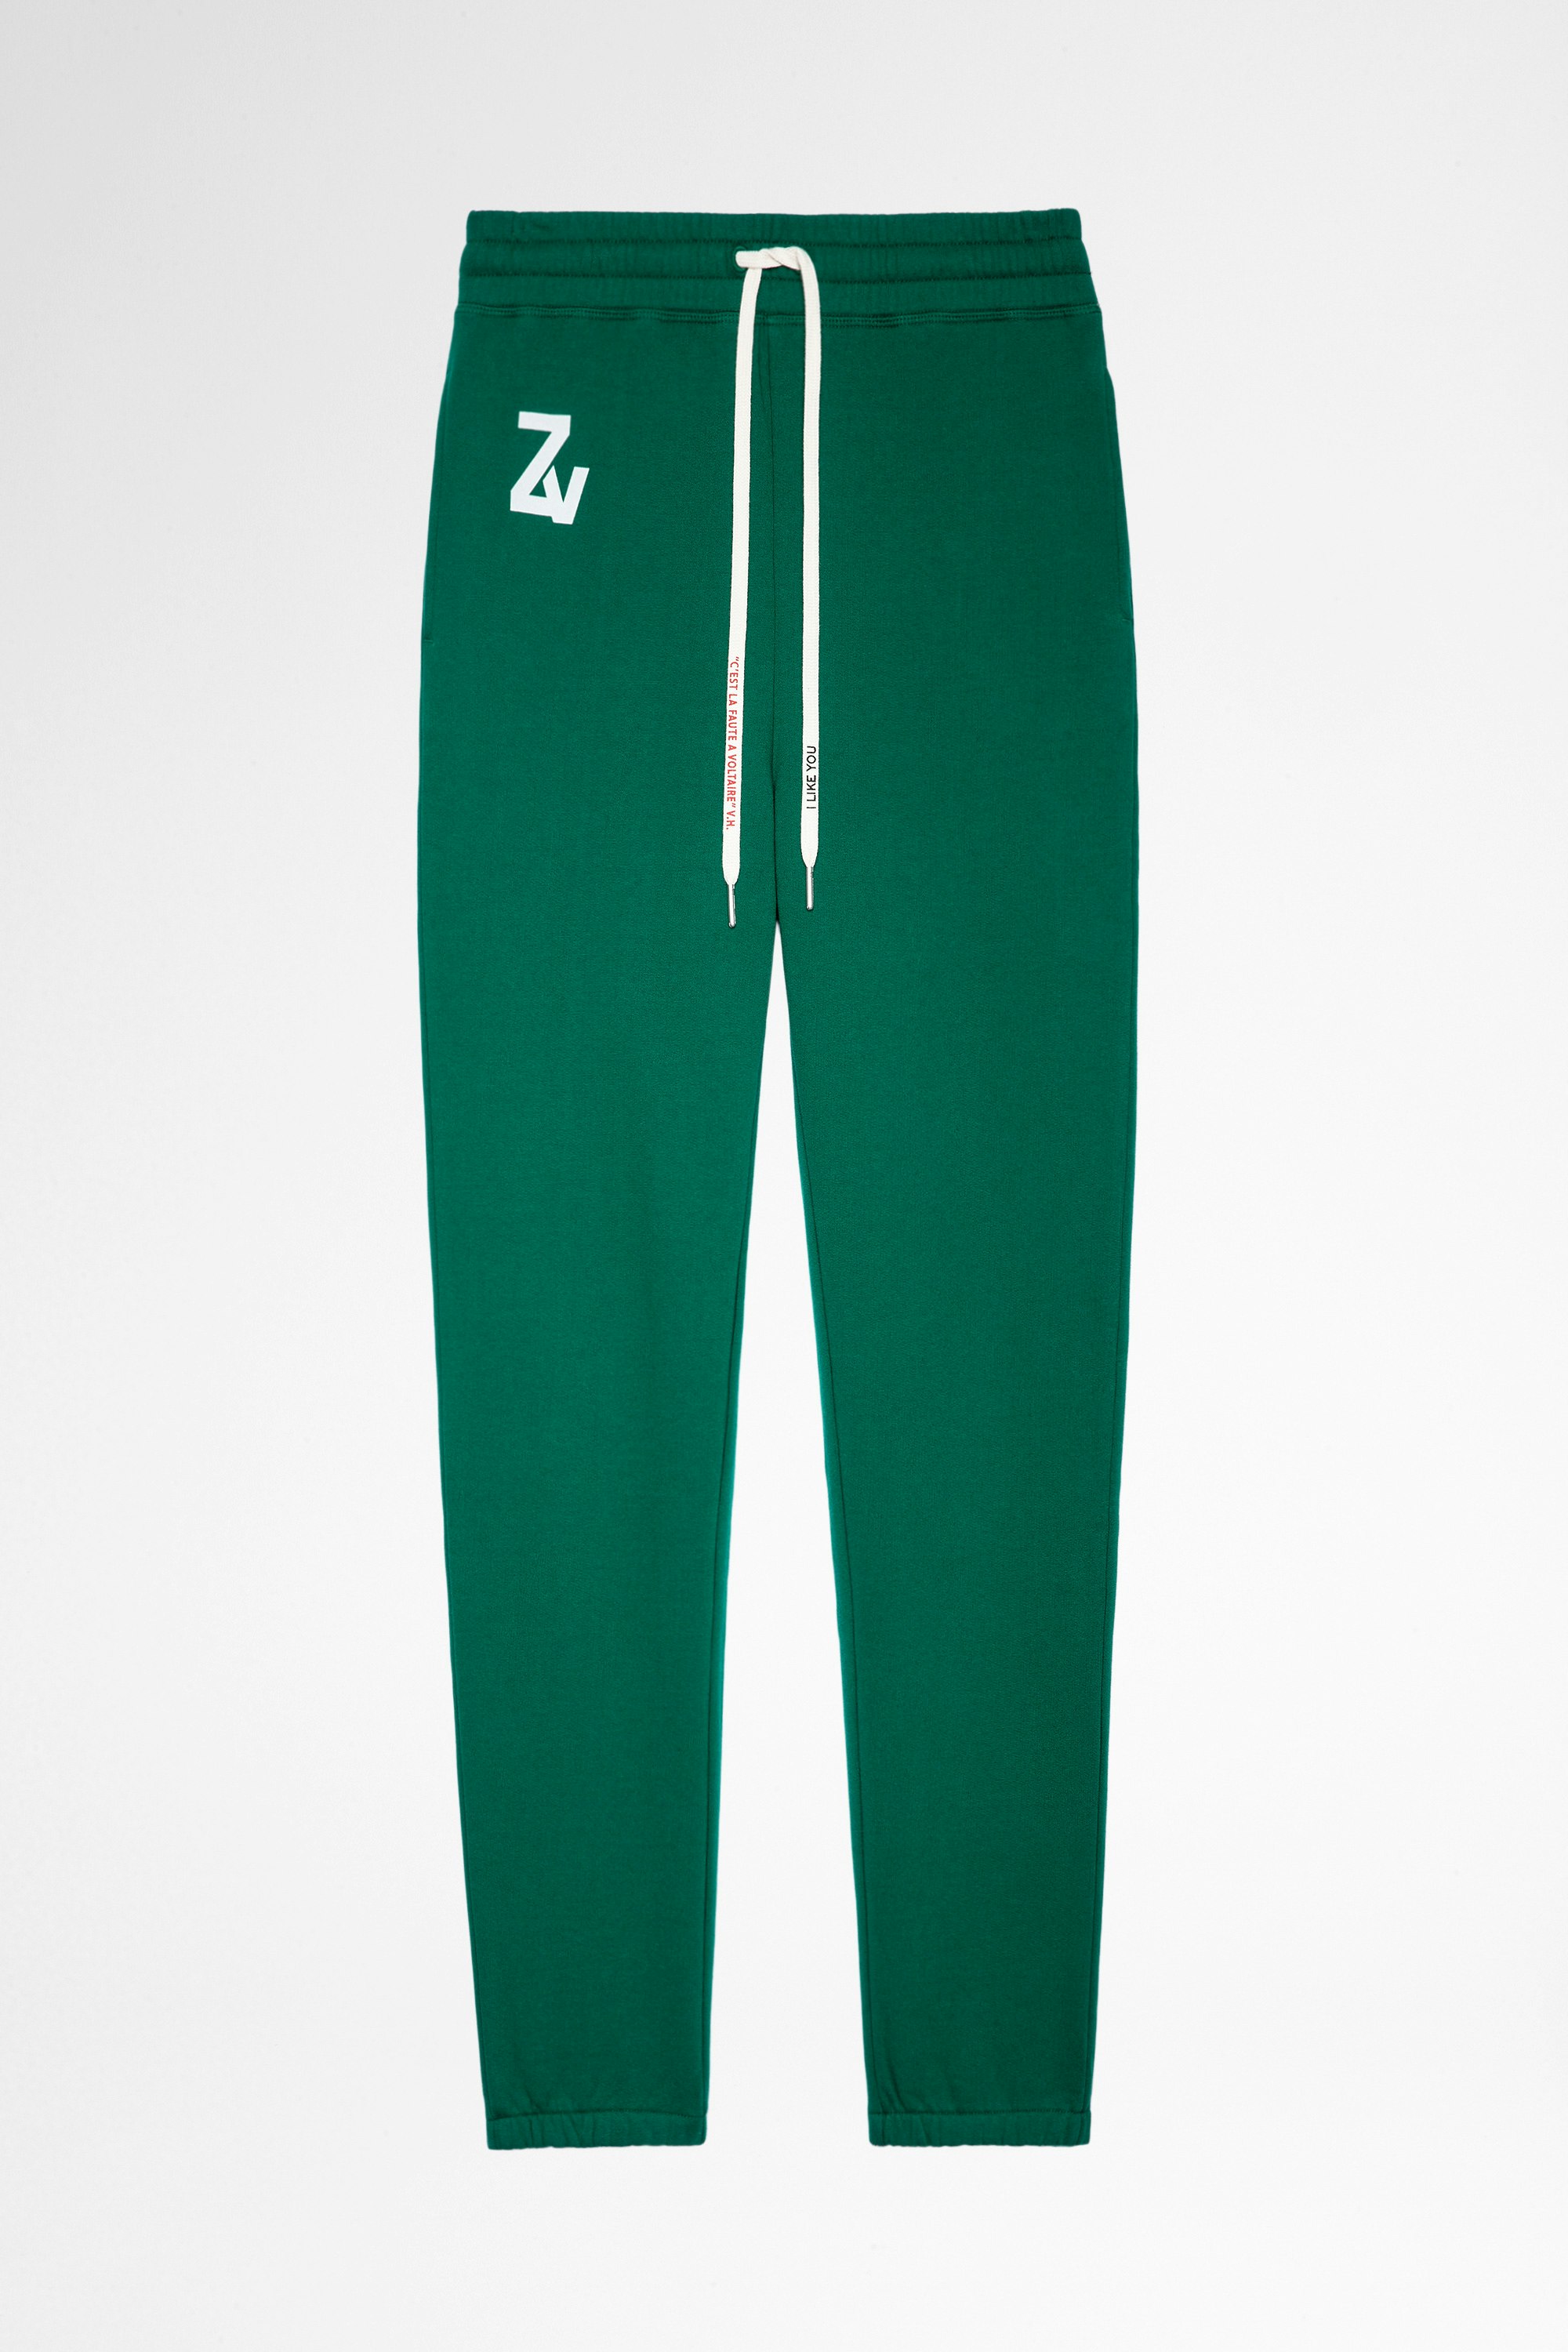 Pantalón deportivo Steevy Pantalón deportivo de mujer de algodón verde. Este producto cuenta con la certificación GOTS y está confeccionado con fibras procedentes de la agricultura ecológica.